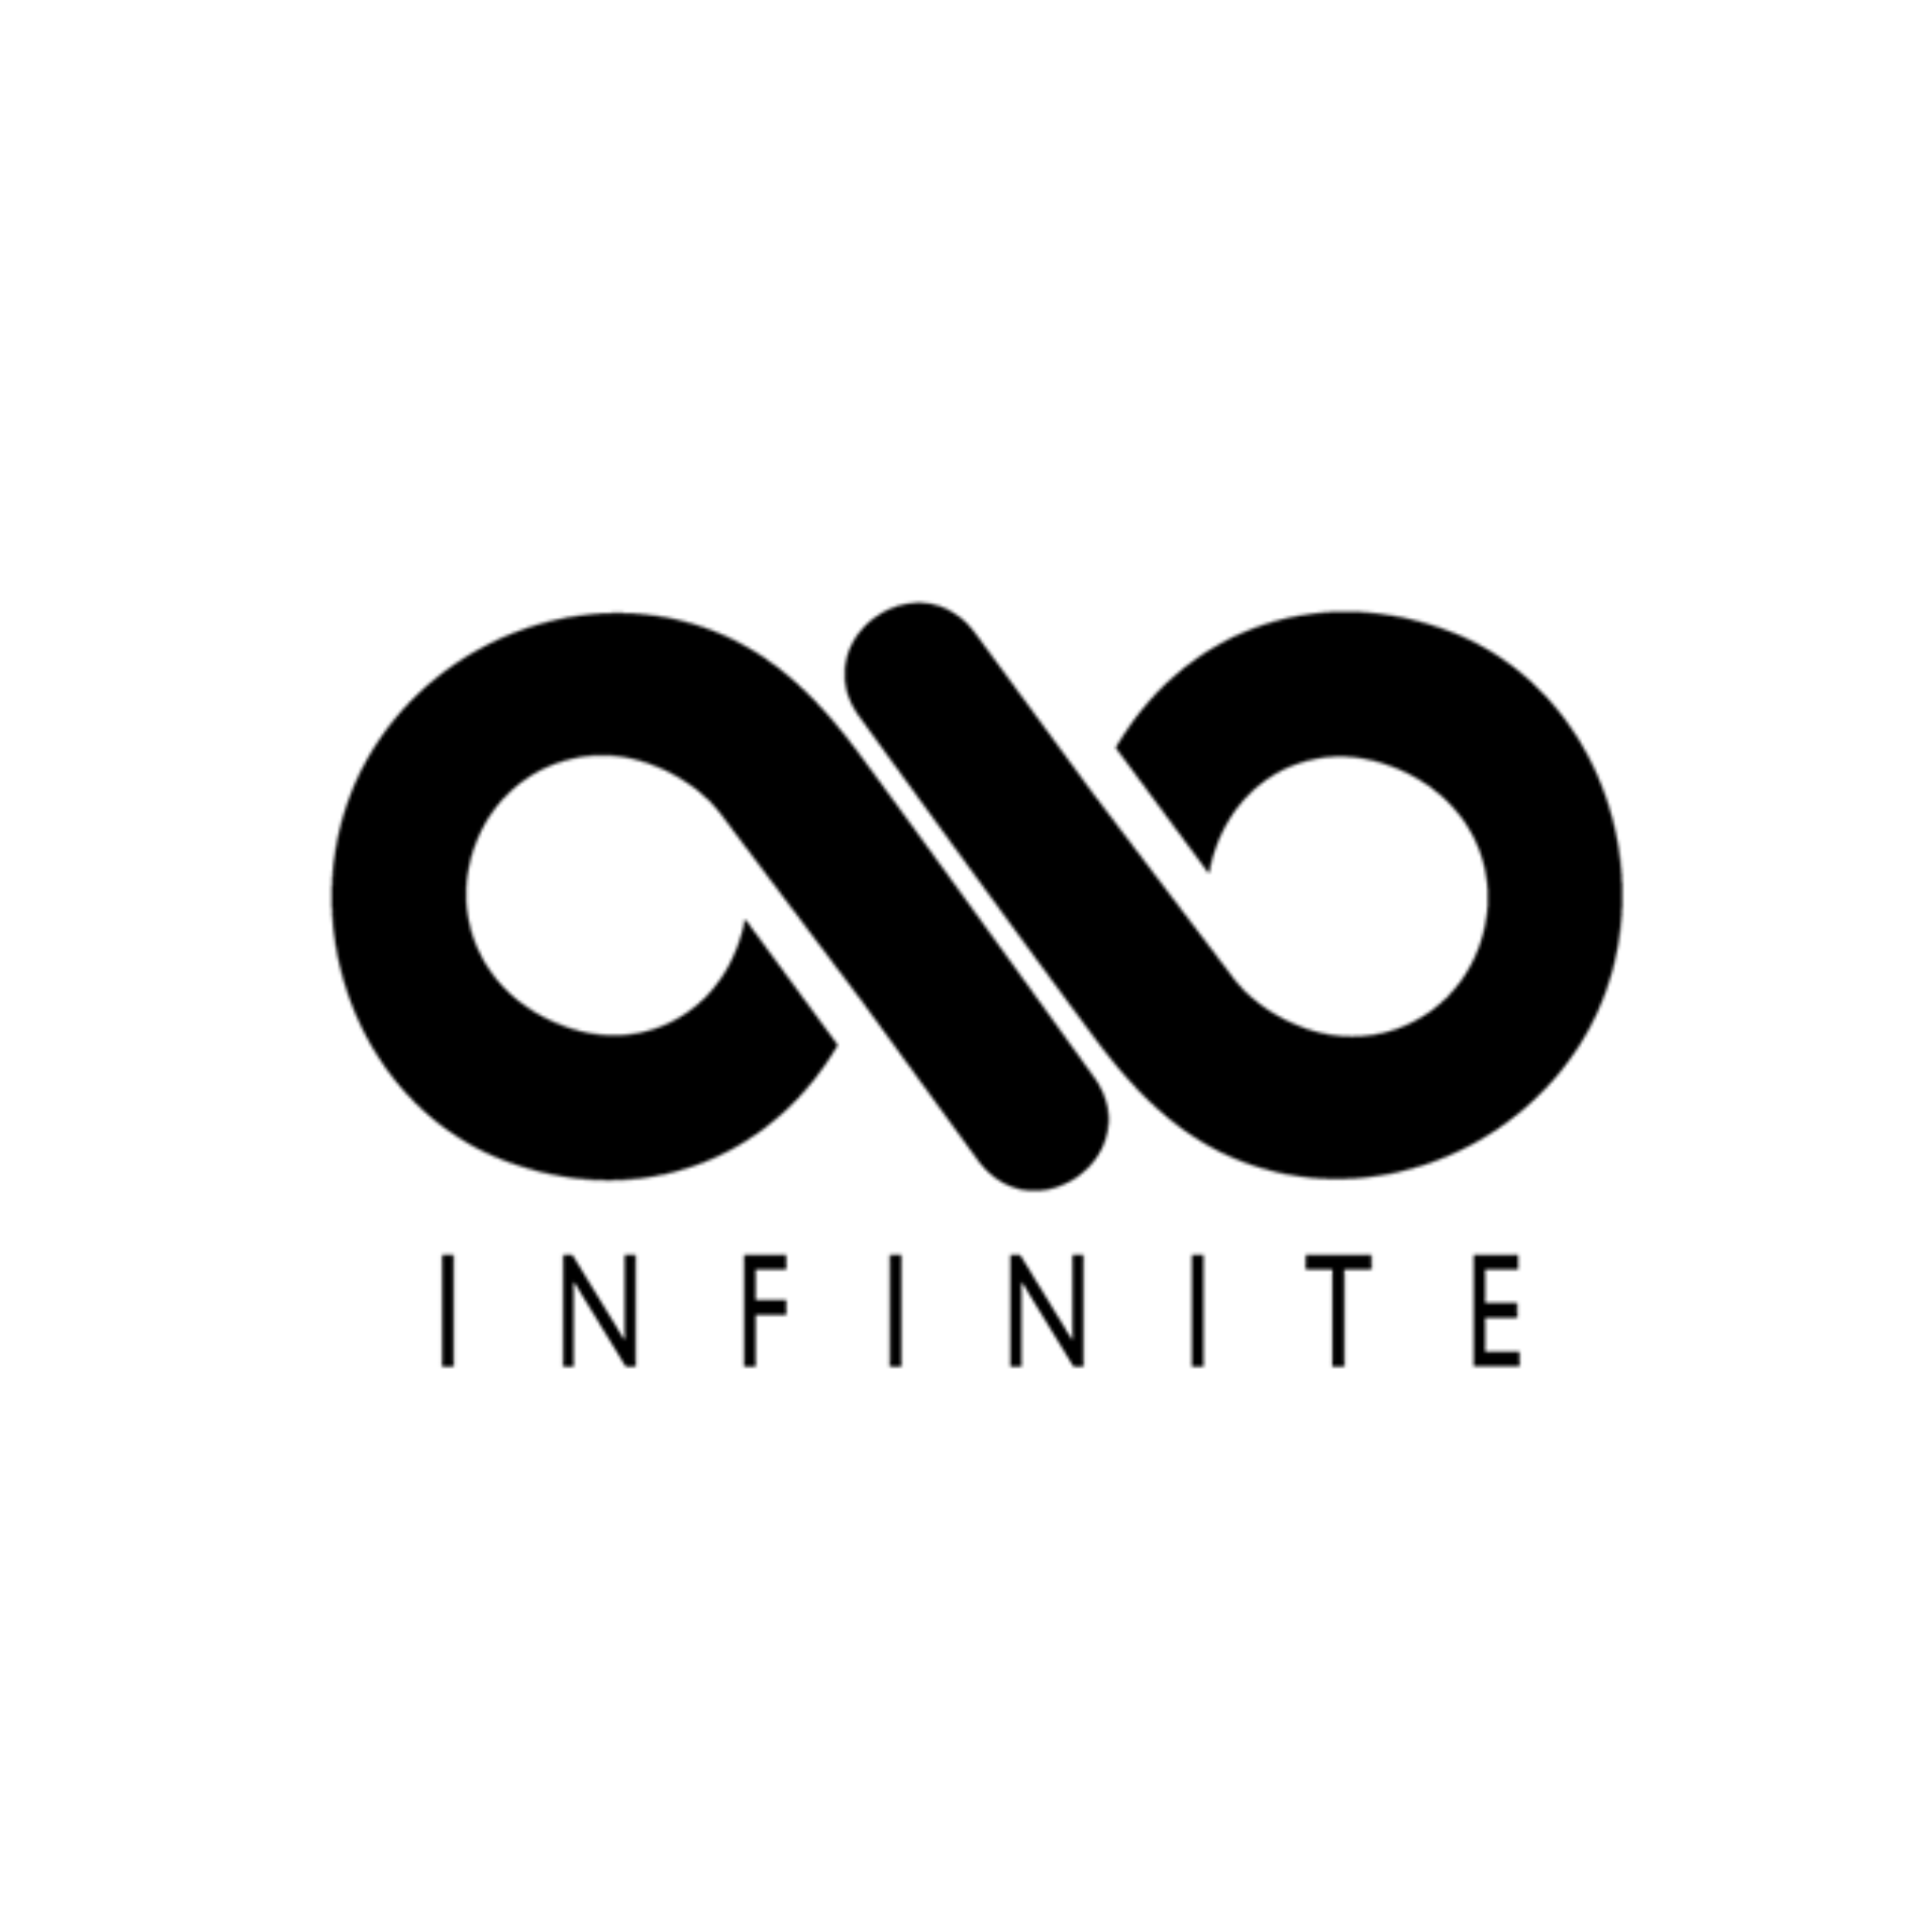 INFINITE_logo.png